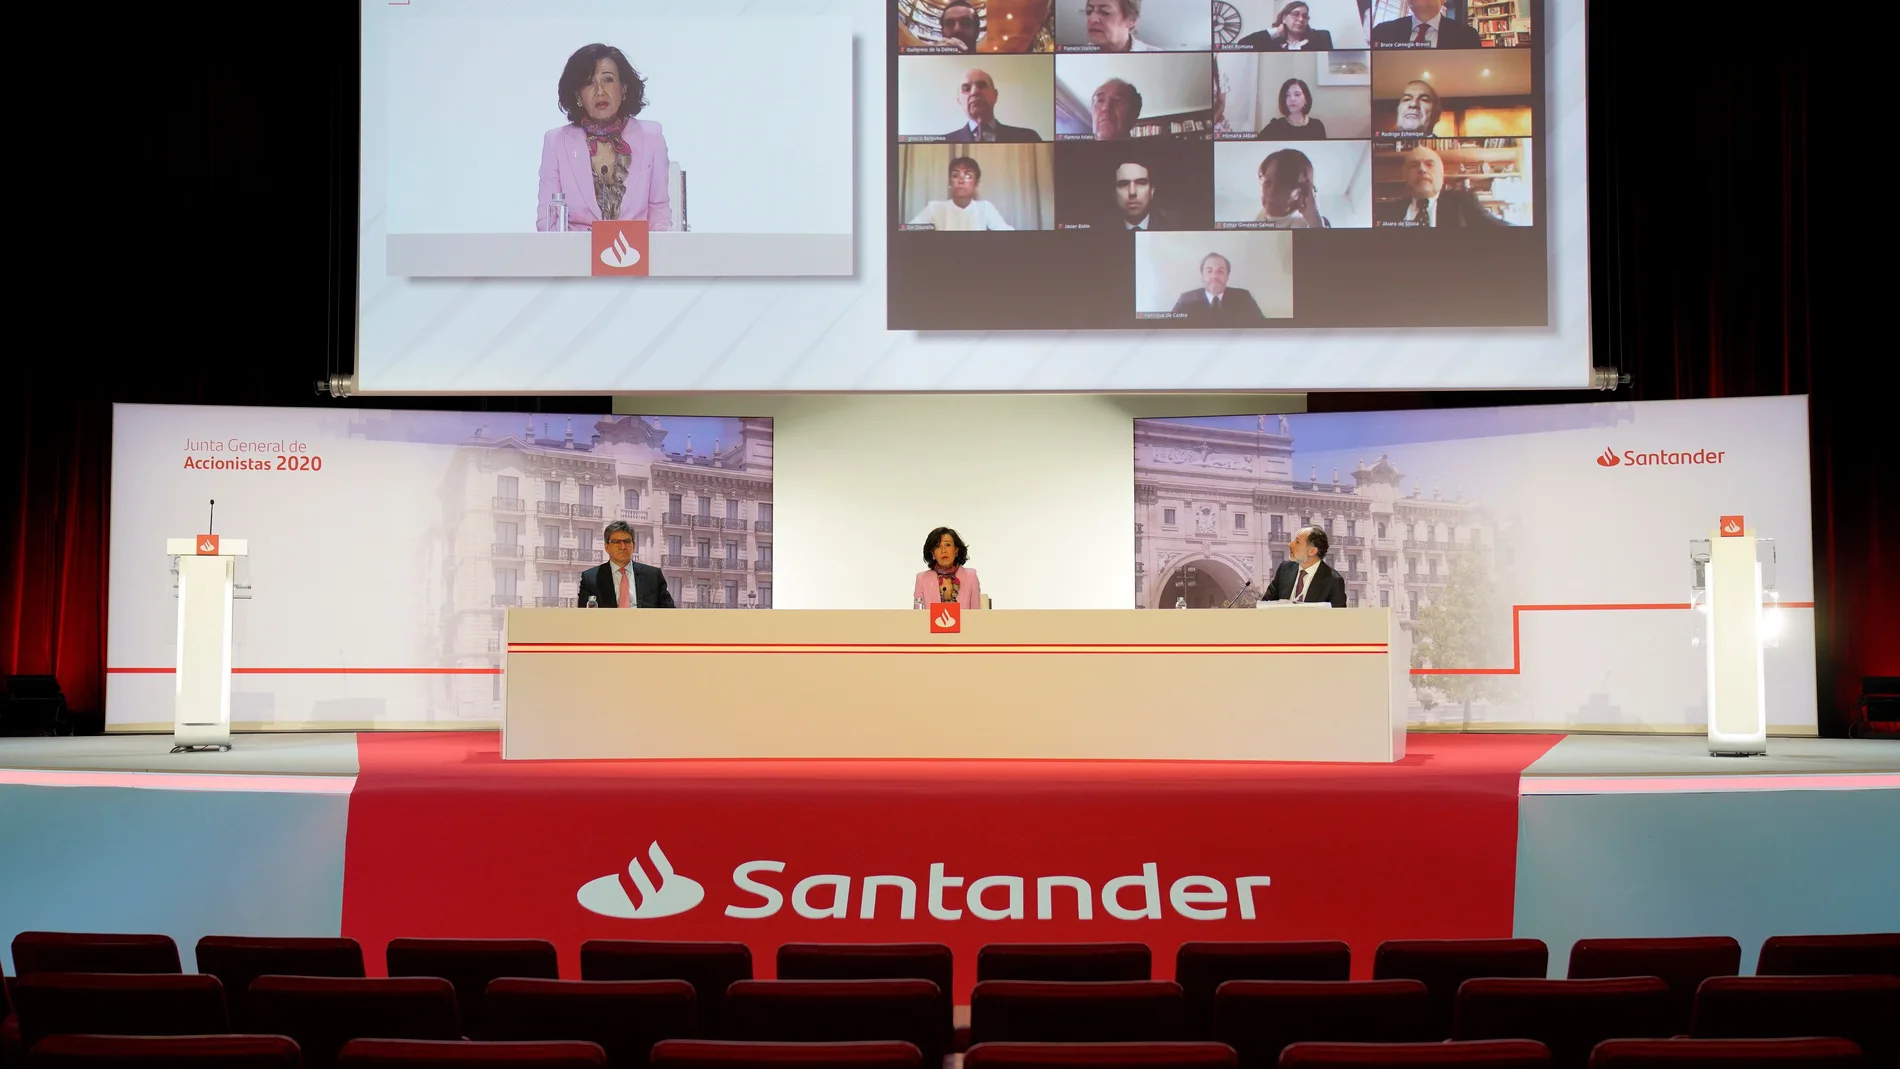 Junta General de Accionistas del Santander